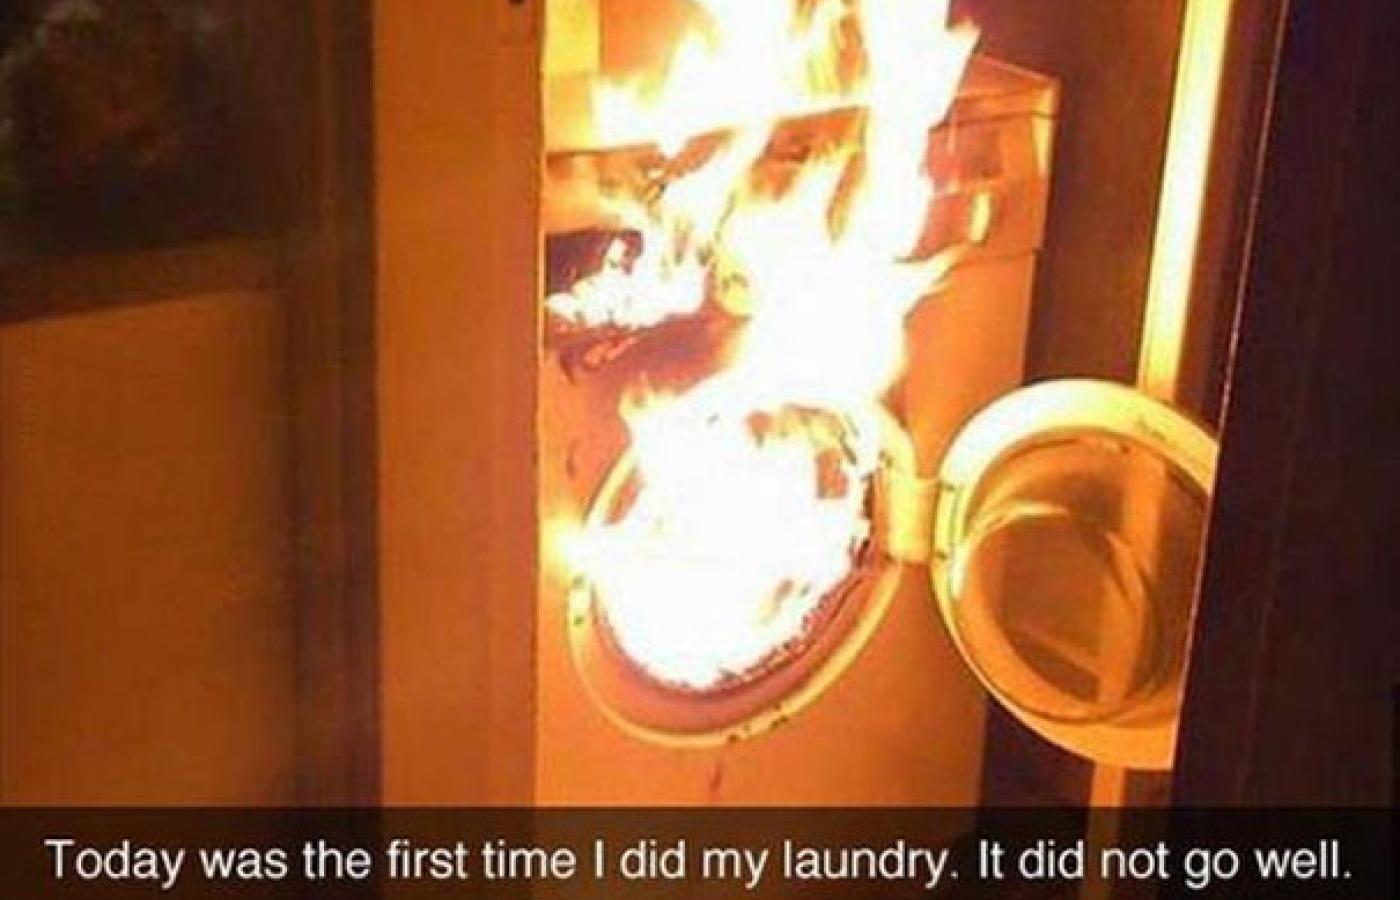 Dziś po raz pierwszy wstawiłem pranie. Nie poszło dobrze...